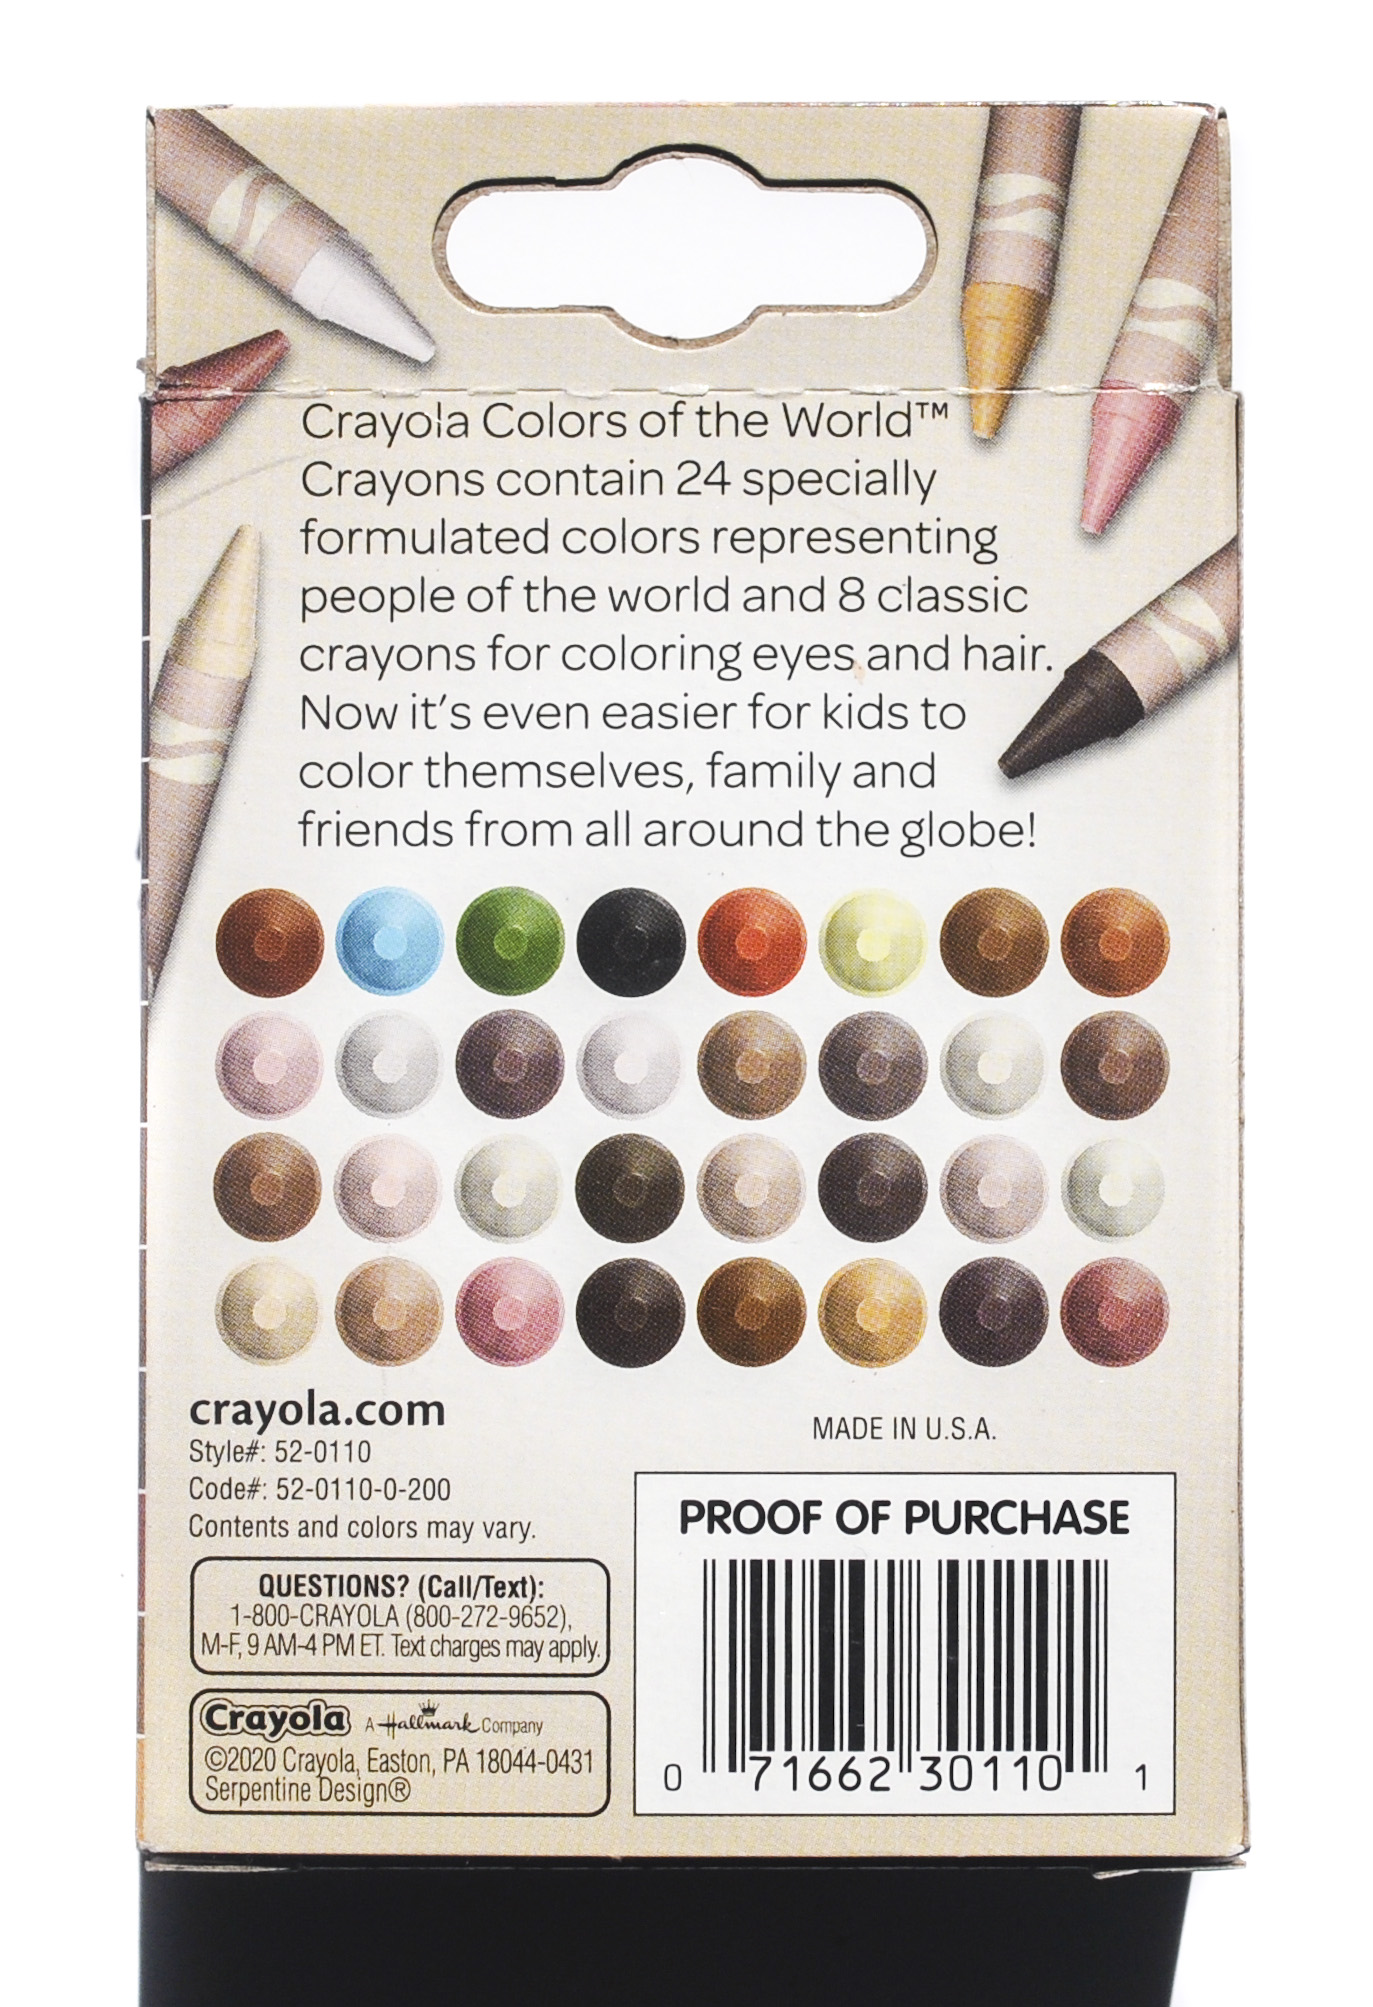 Crayola Crayons 32 Count Box